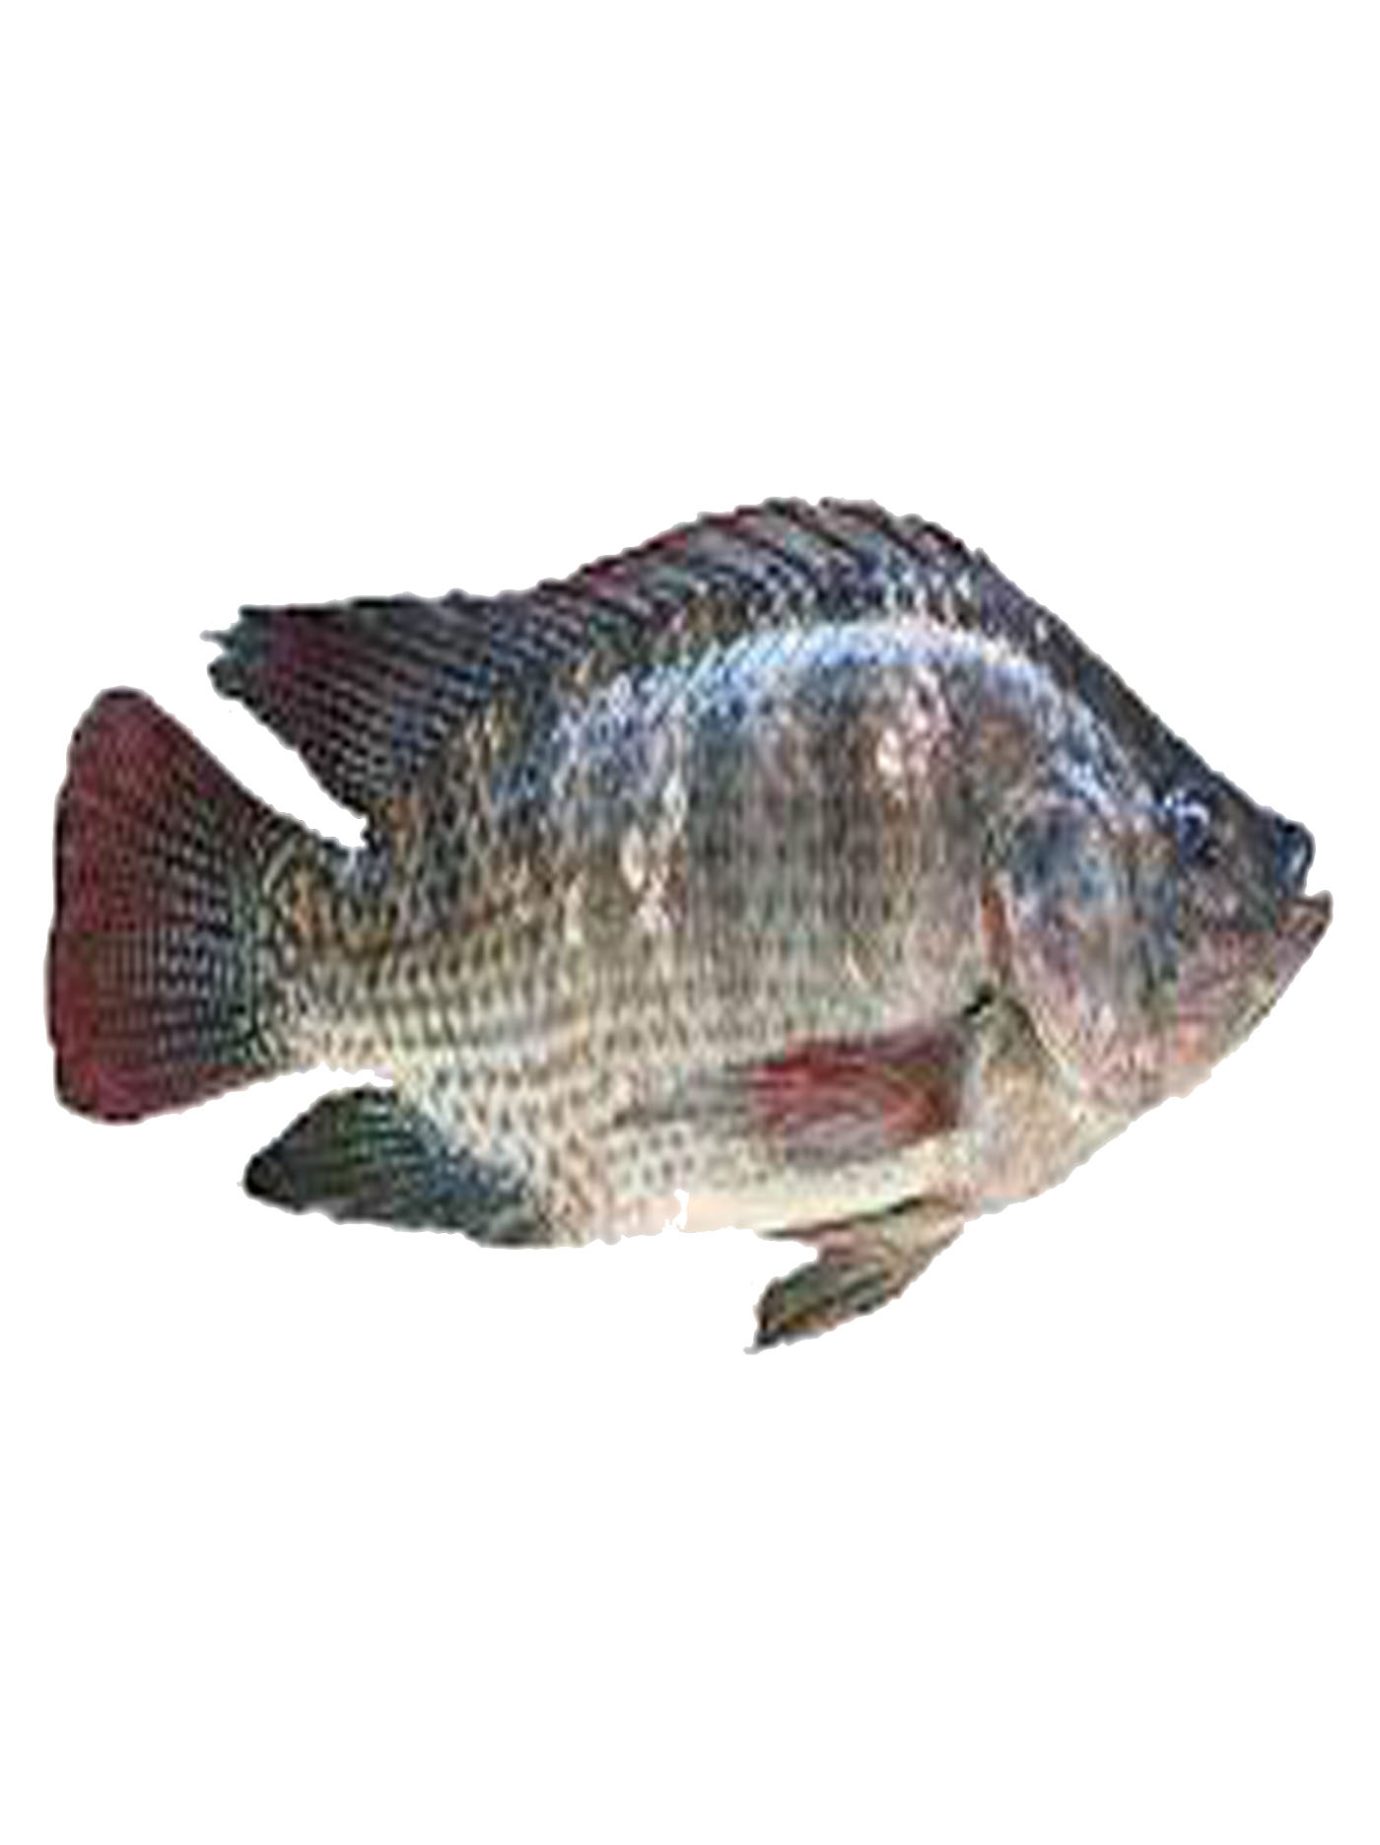 ماهی تیلاپیا چیست و آیا مضرات مطرح شده برای آن واقعی است؟